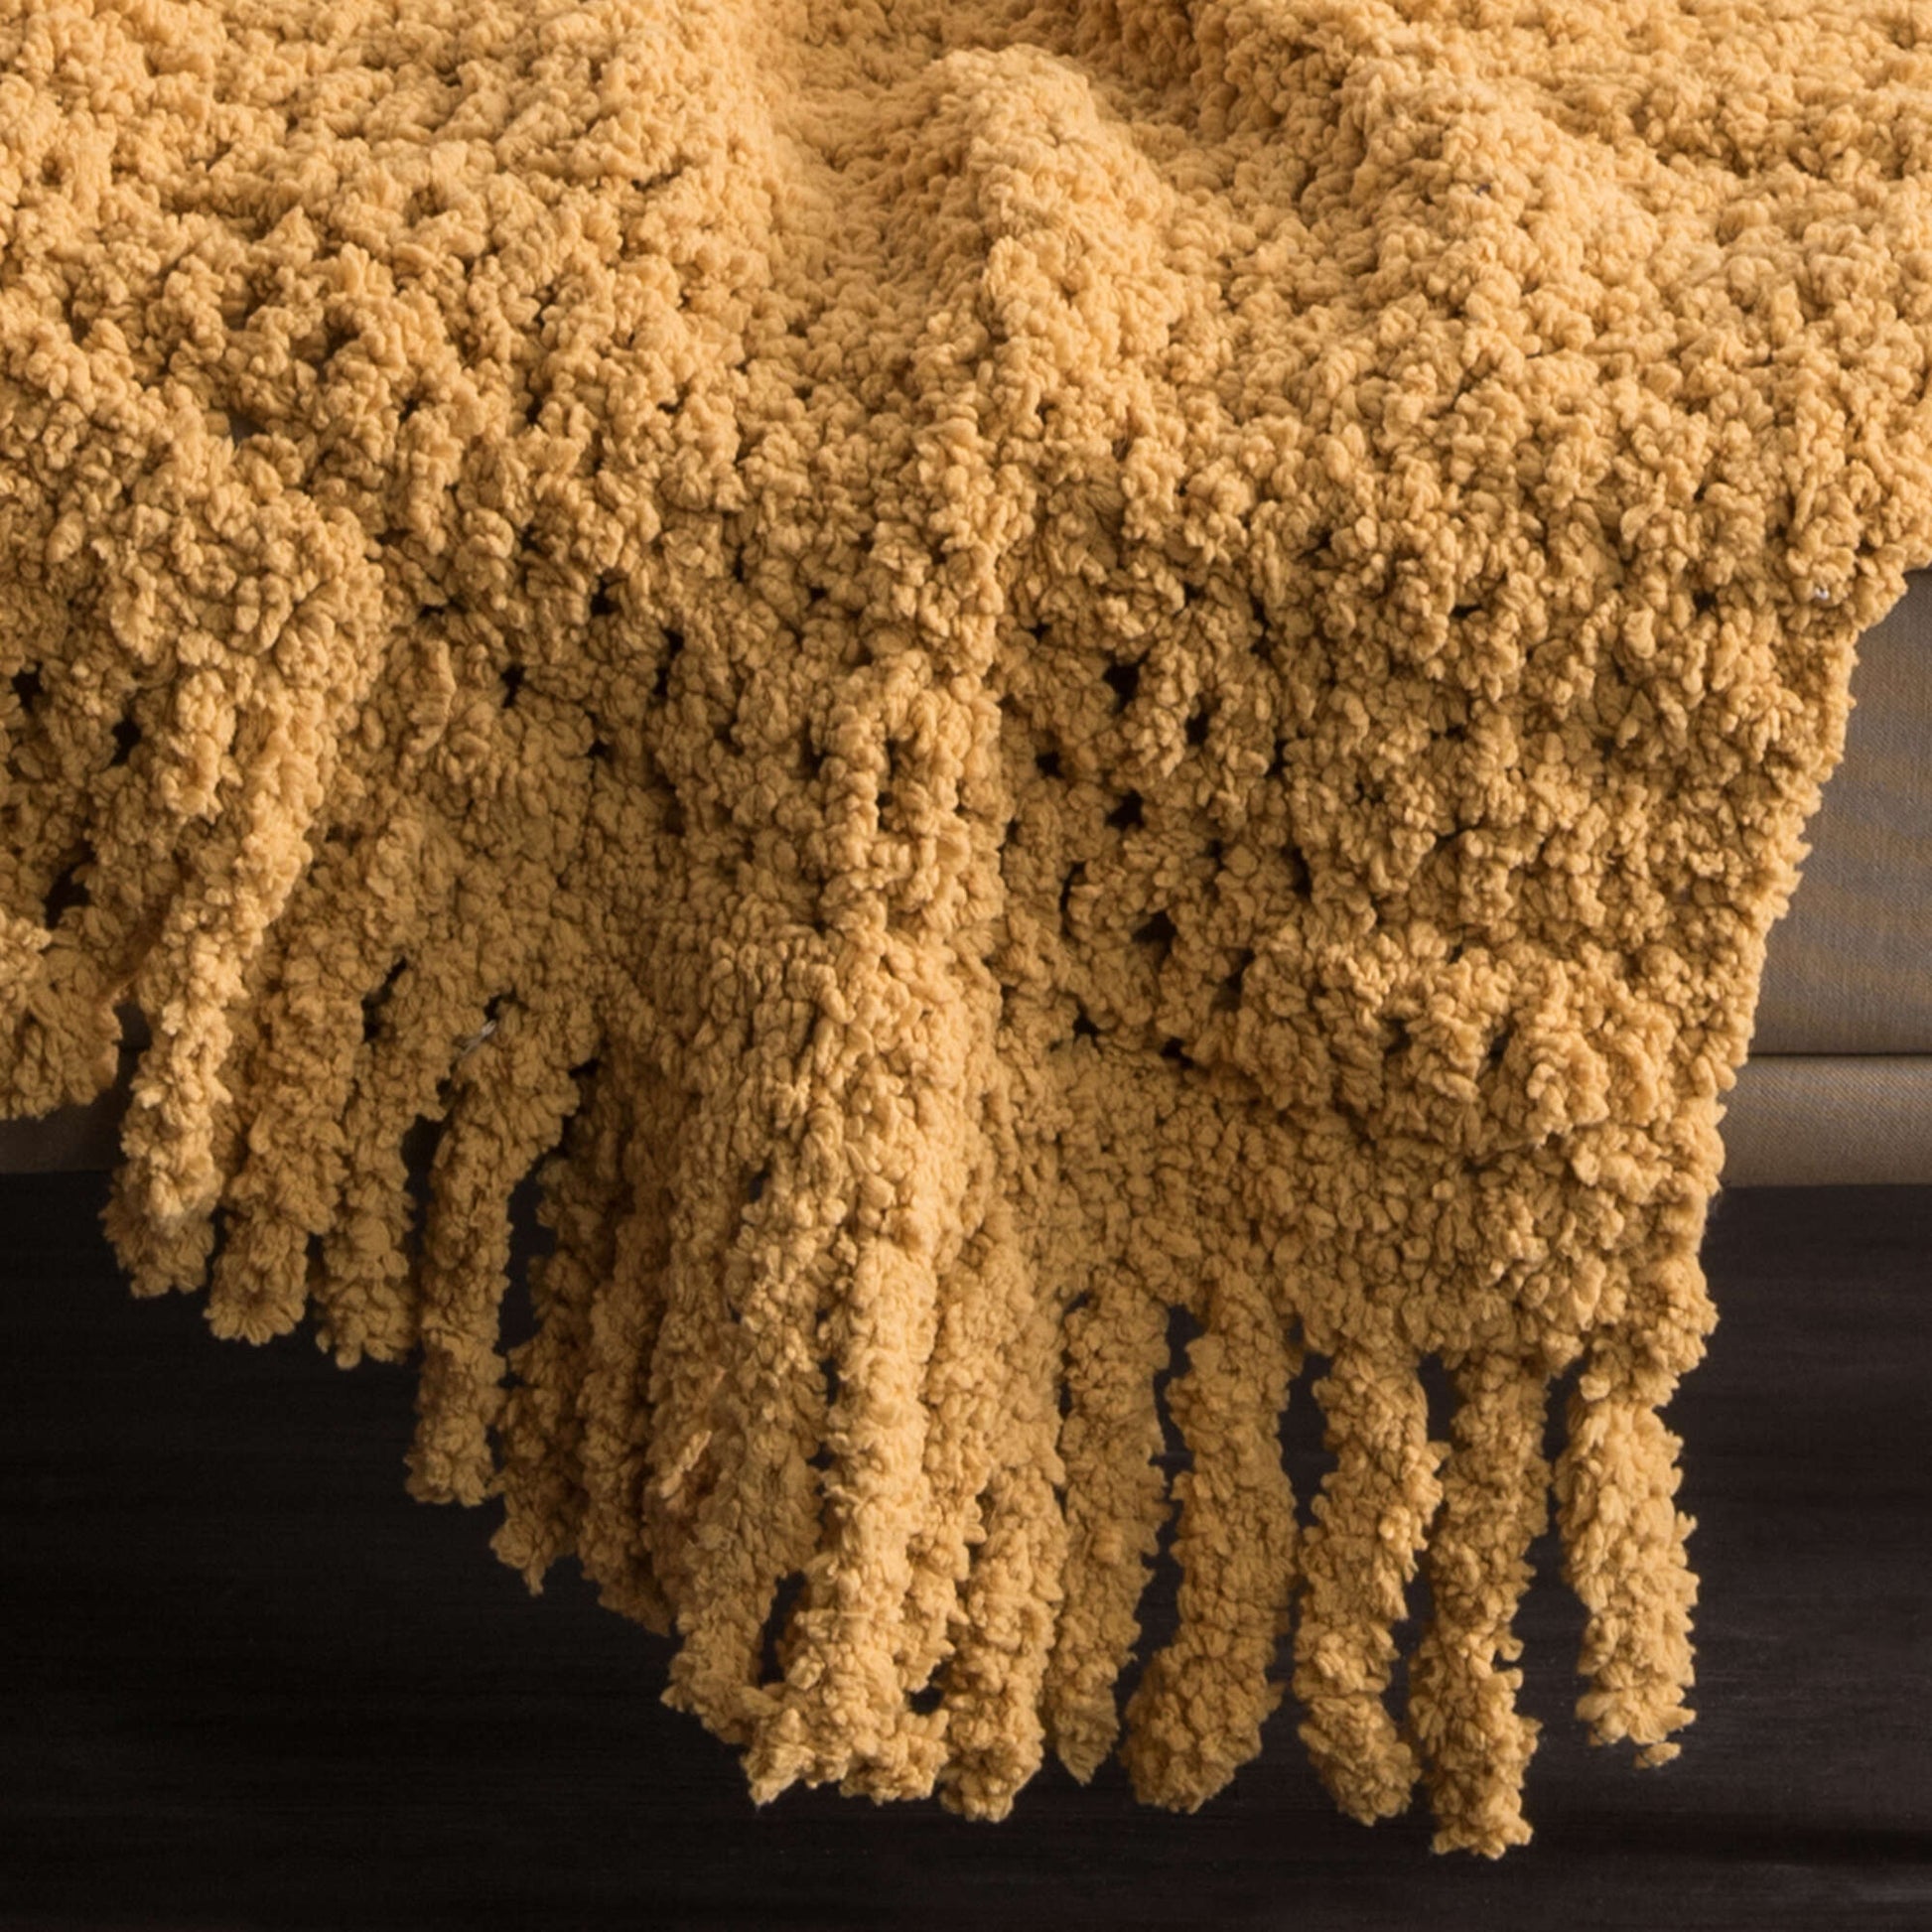 Free Bernat Family Room Crochet Blanket Pattern